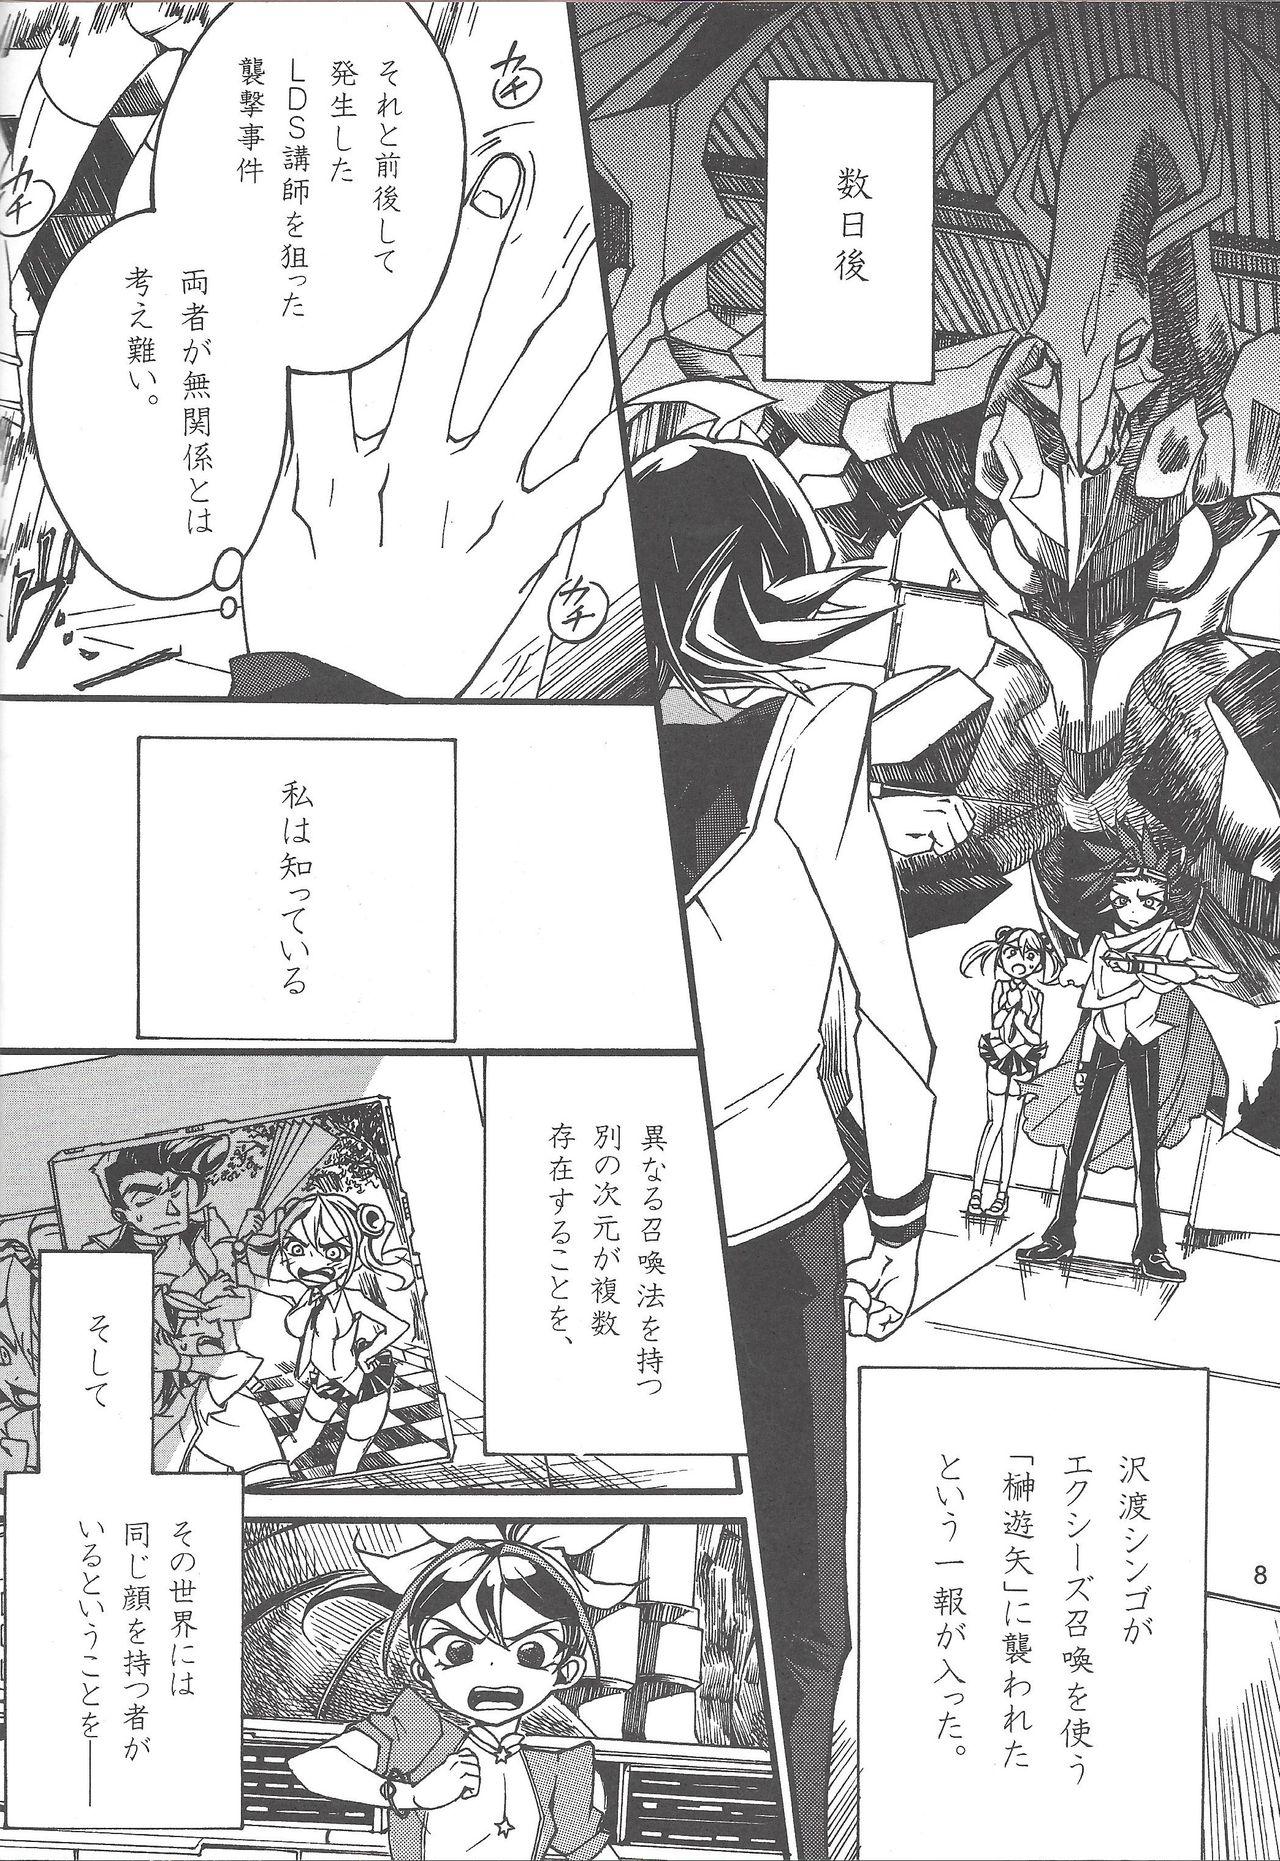 Passivo Uso-tsuki akuma no koi - Yu-gi-oh arc-v Jeune Mec - Page 7